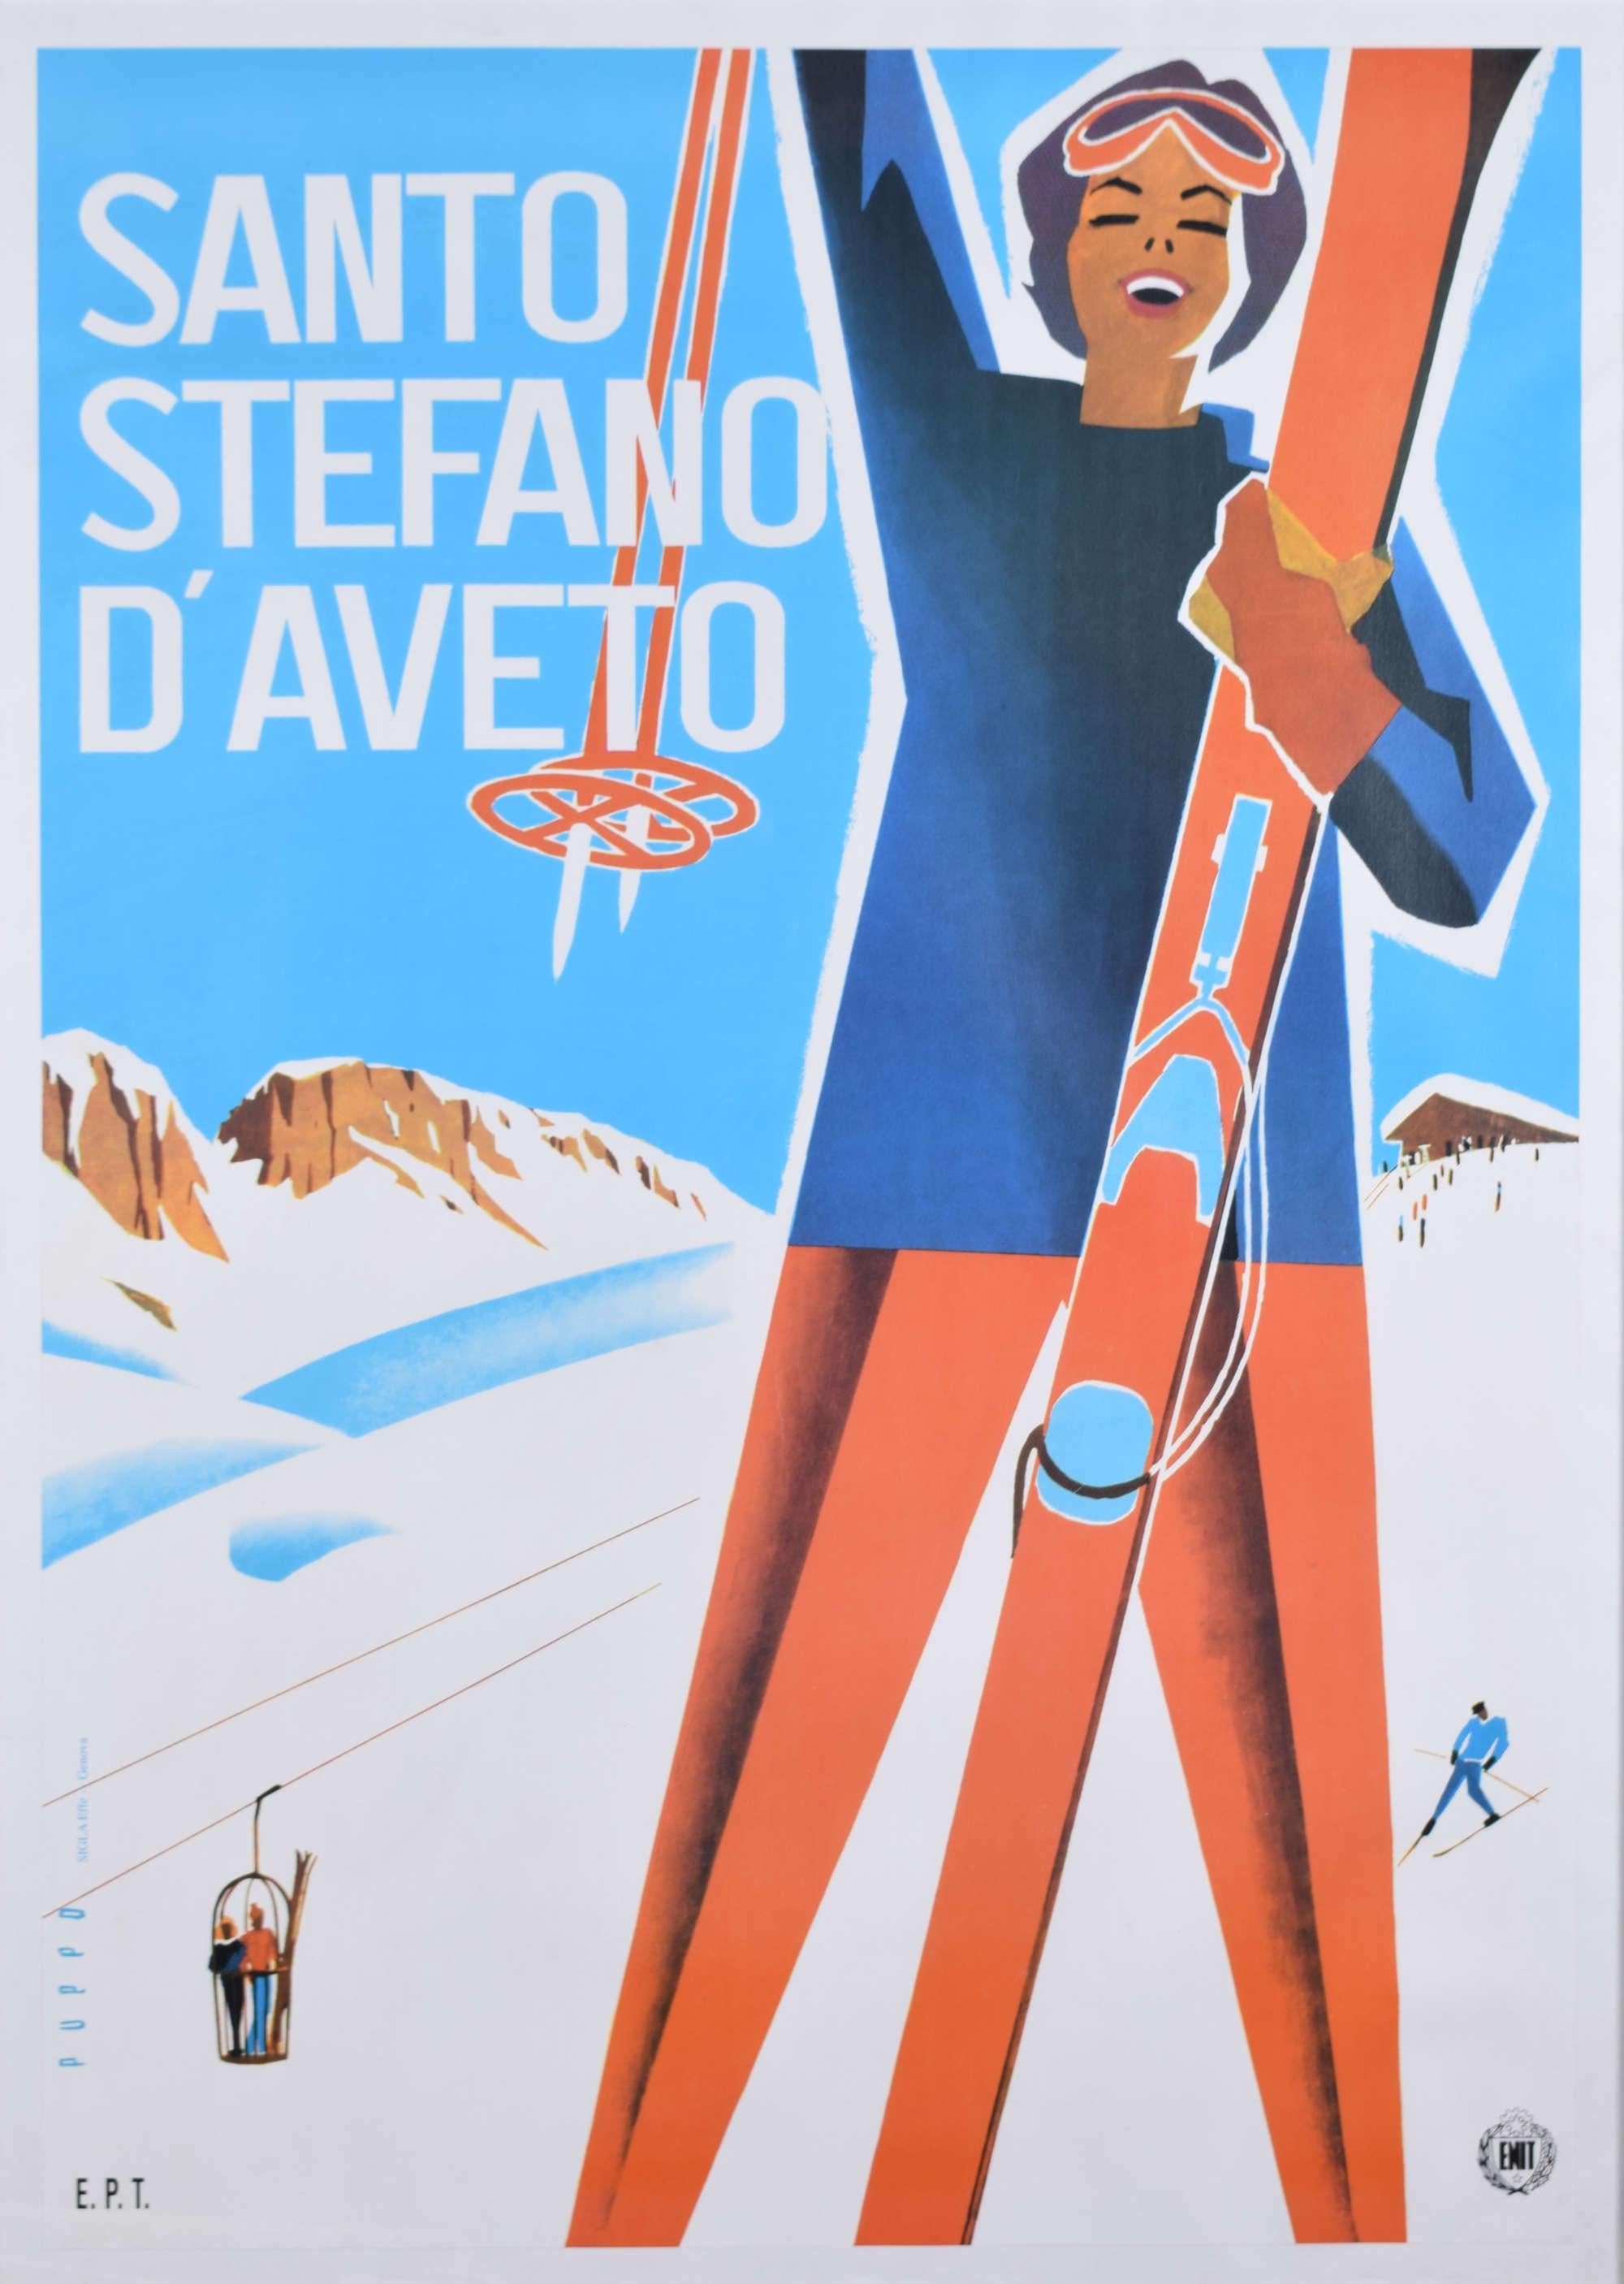 Pour voir nos autres affiches de voyage vintage originales, dont beaucoup ont pour sujet le ski, faites défiler la page jusqu'à "More from this Seller" et cliquez en dessous sur "See all from this Seller" - ou envoyez-nous un message si vous ne